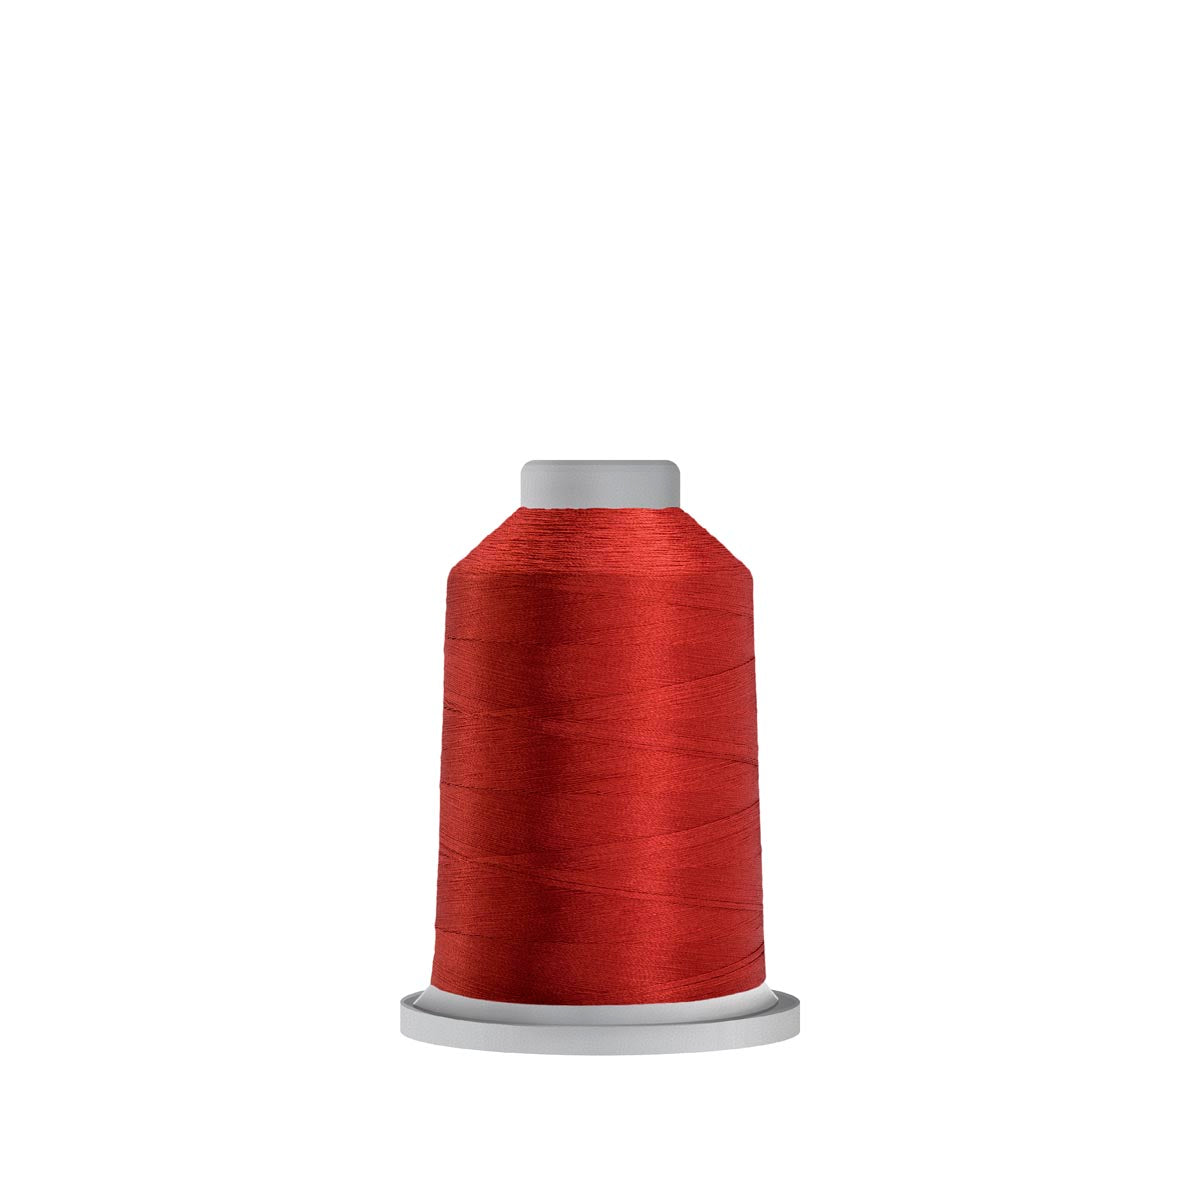 70179 Tomato Glide Polyester Thread - 1,100 yards Mini Spool Fil-Tec